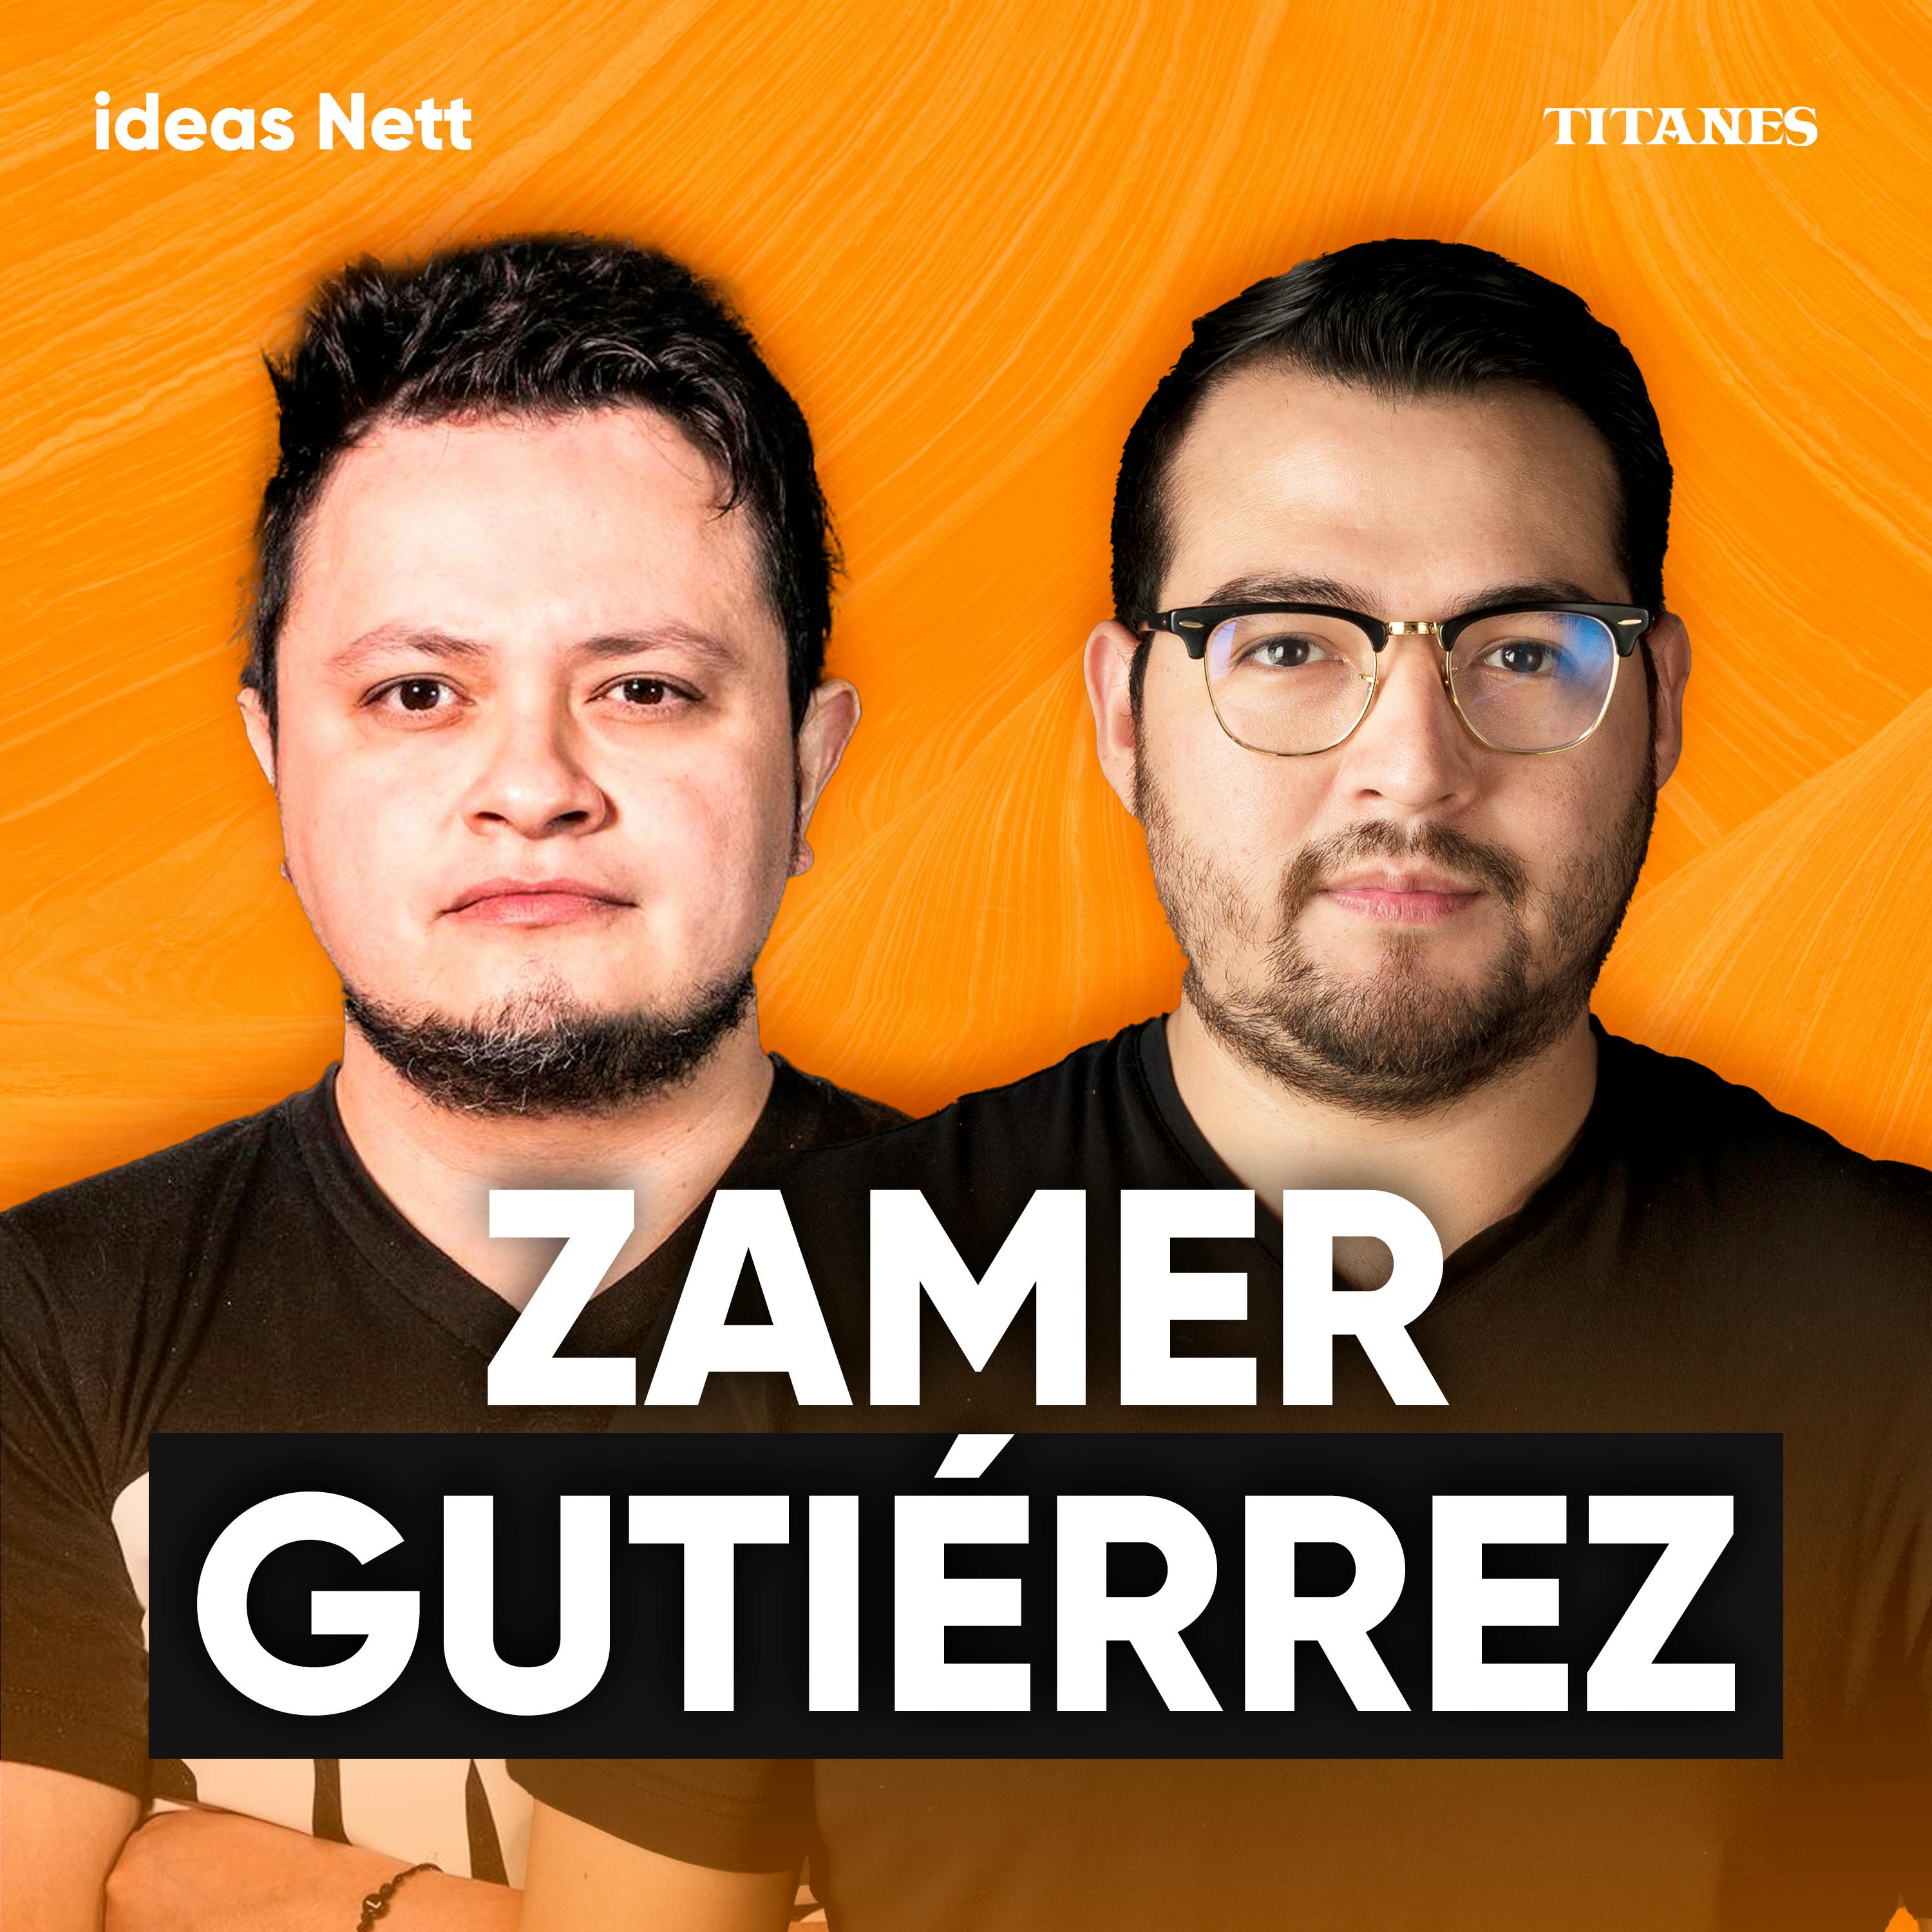 Titanes en Ideas Nett | Así empezaría un podcast en 2023